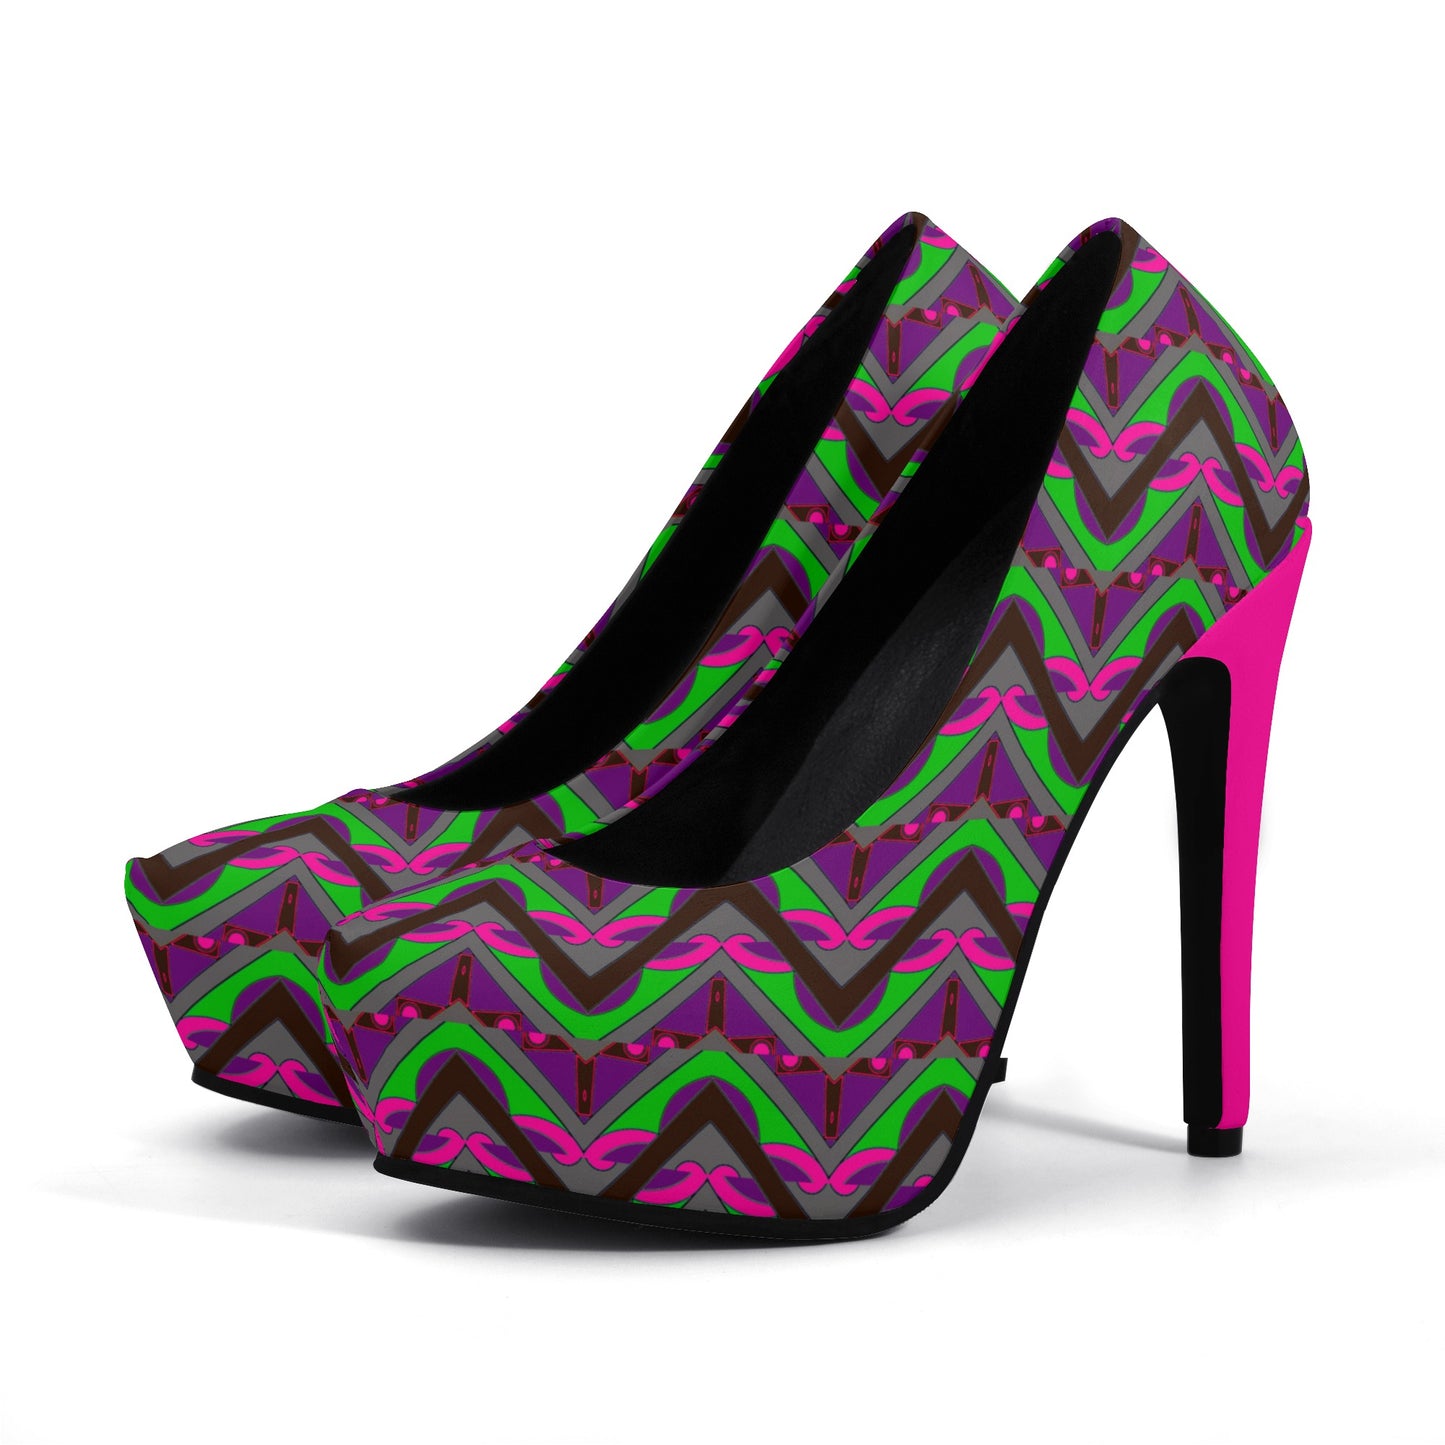 Maze Women Platform Pumps 5 Inch High Heels - women's shoes at TFC&H Co.